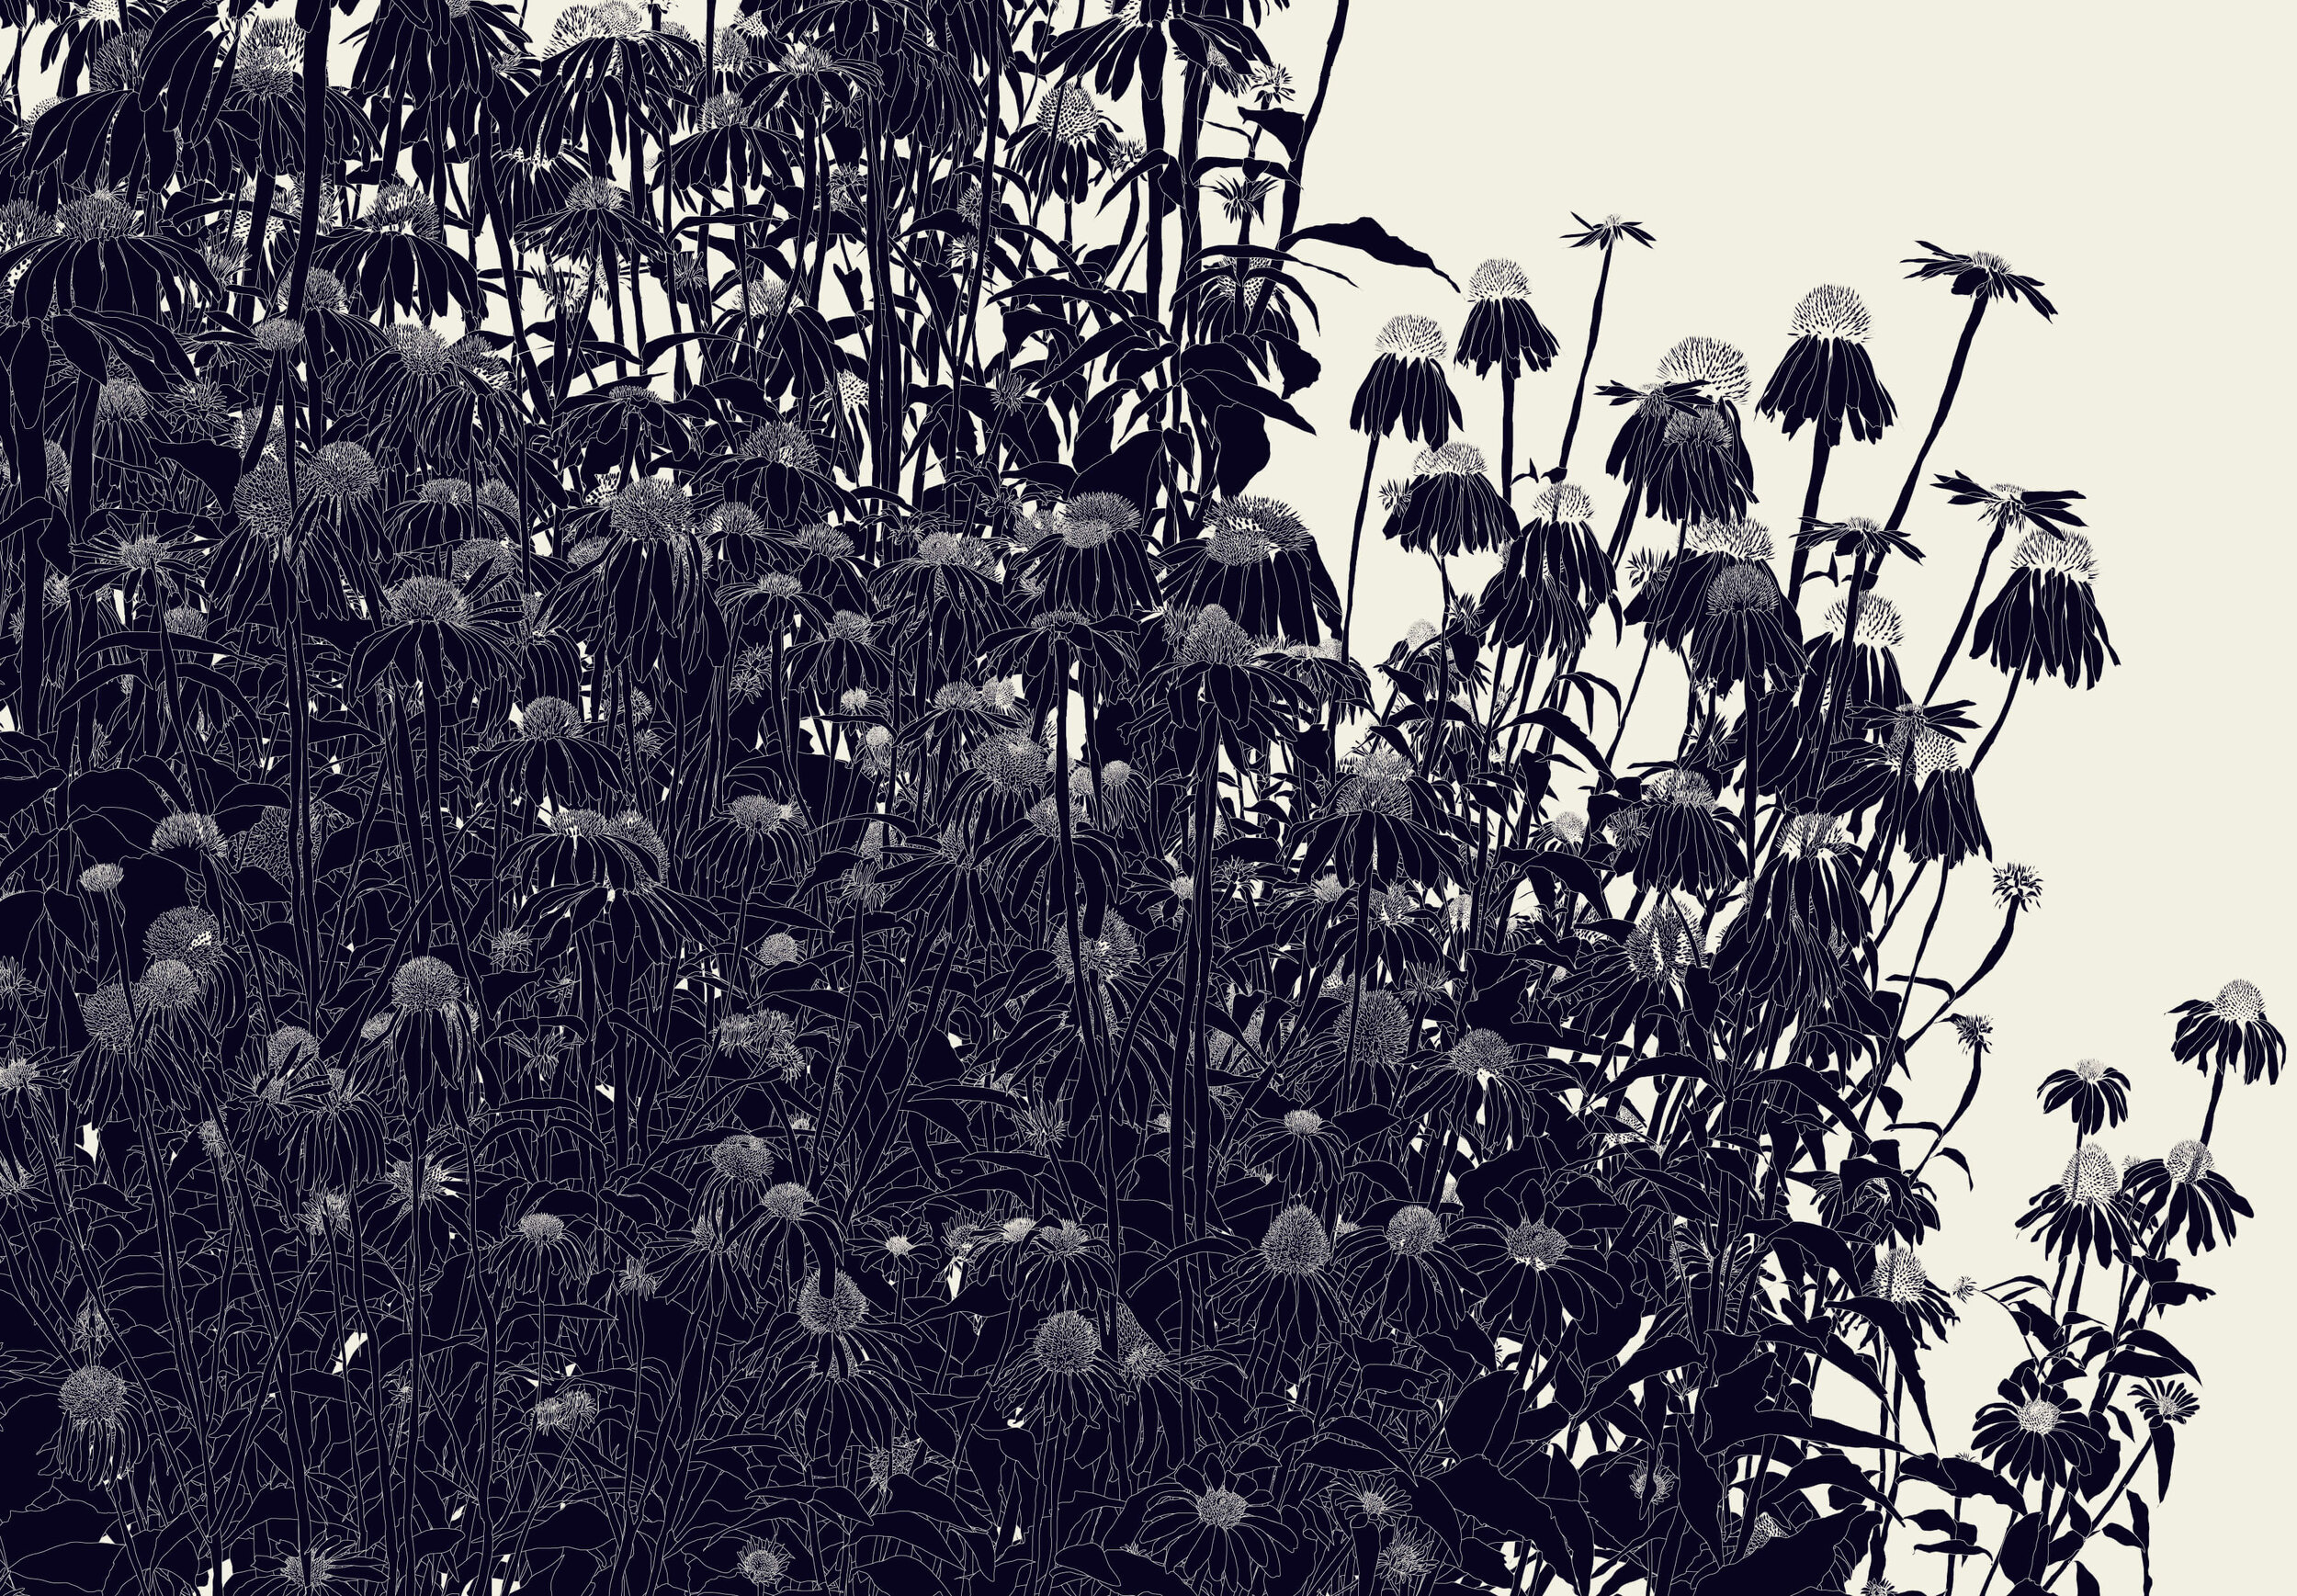 39º 18’ 53.5“N, 106º 58’ 55“W (Black Echinacea 2)